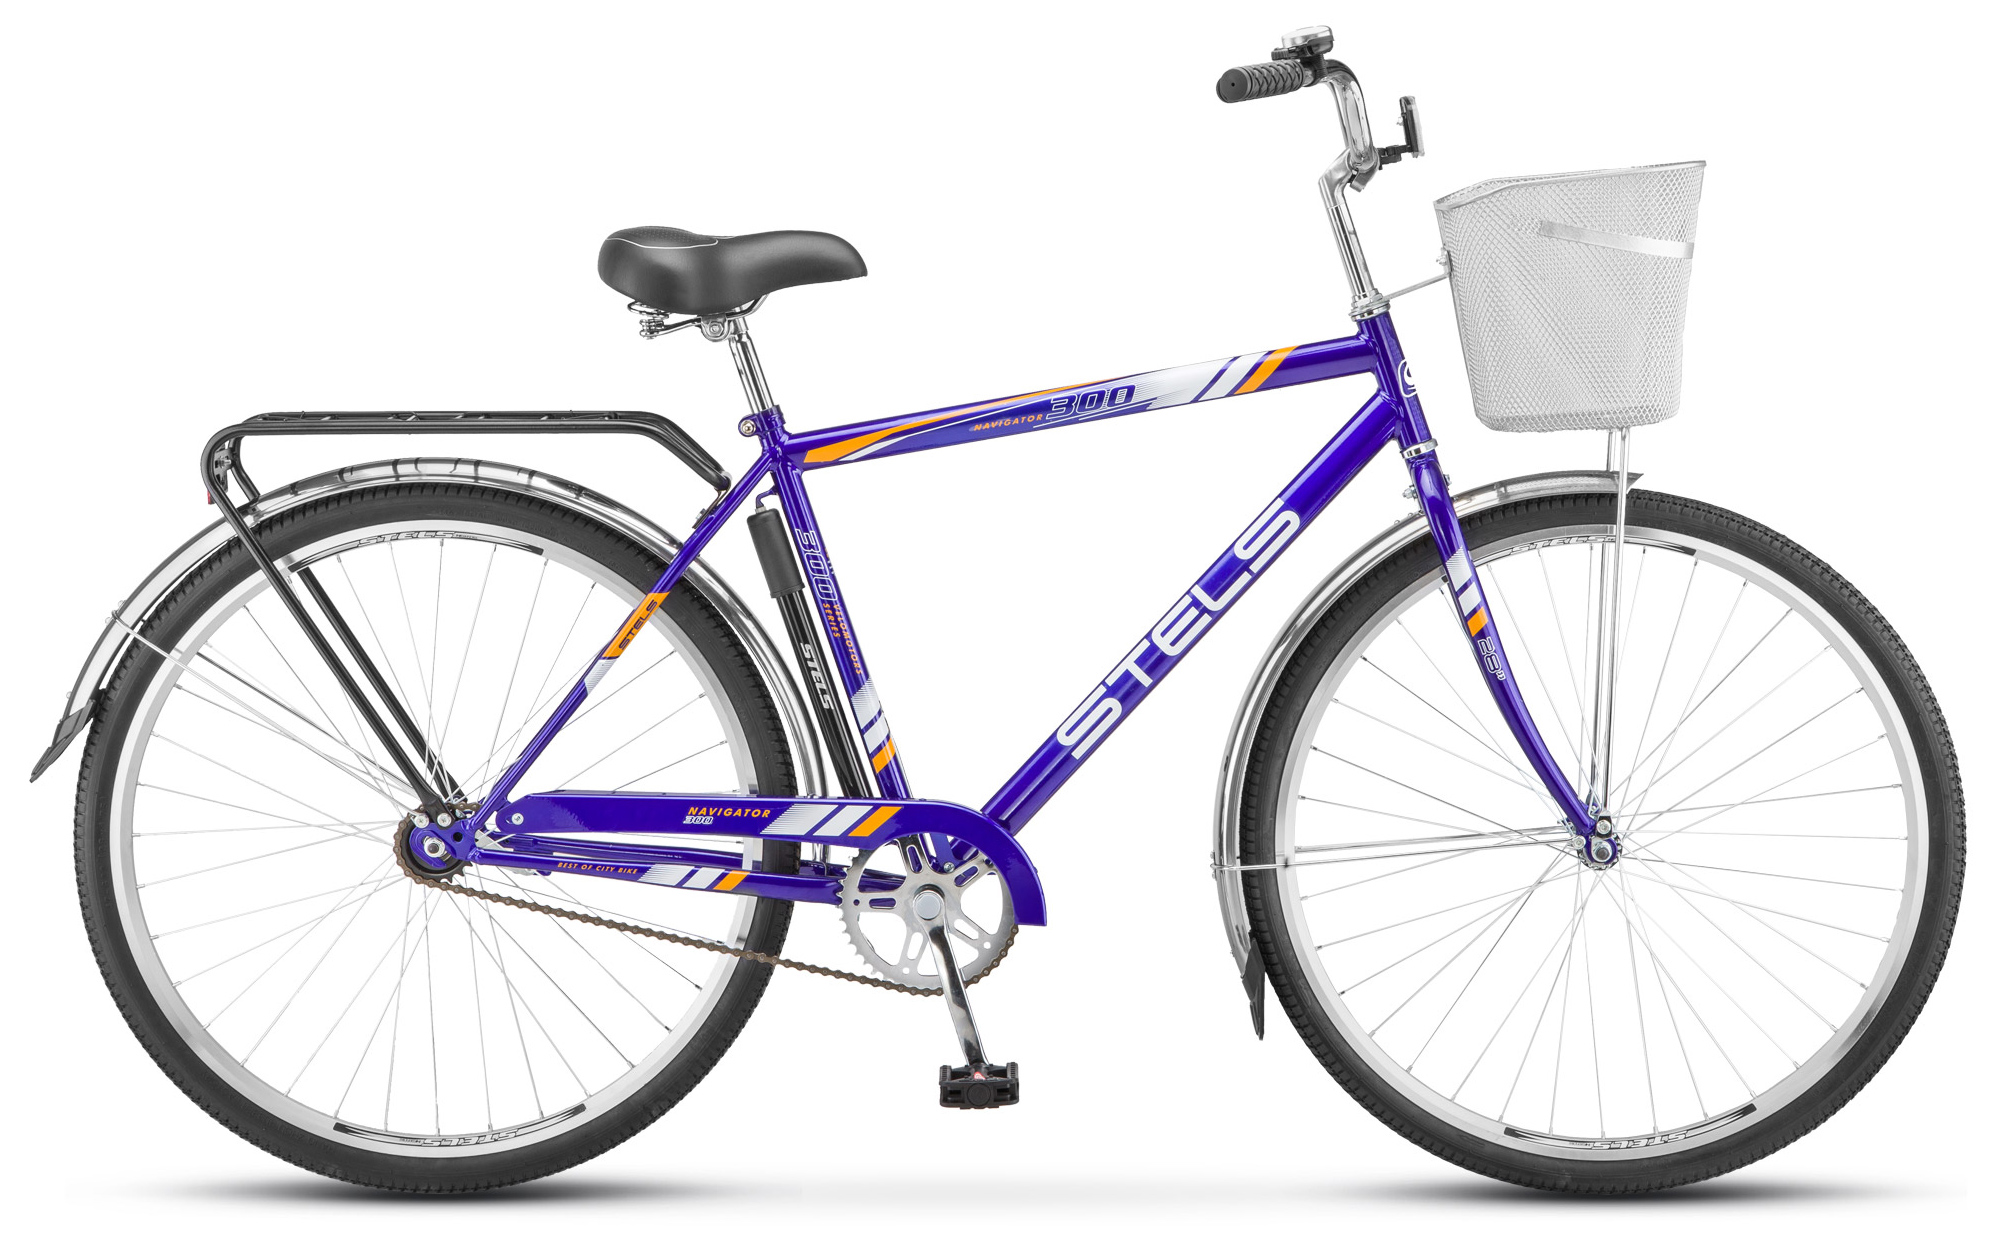  Отзывы о Городском велосипеде Stels Navigator 300 Gent 28 (Z010) 2019